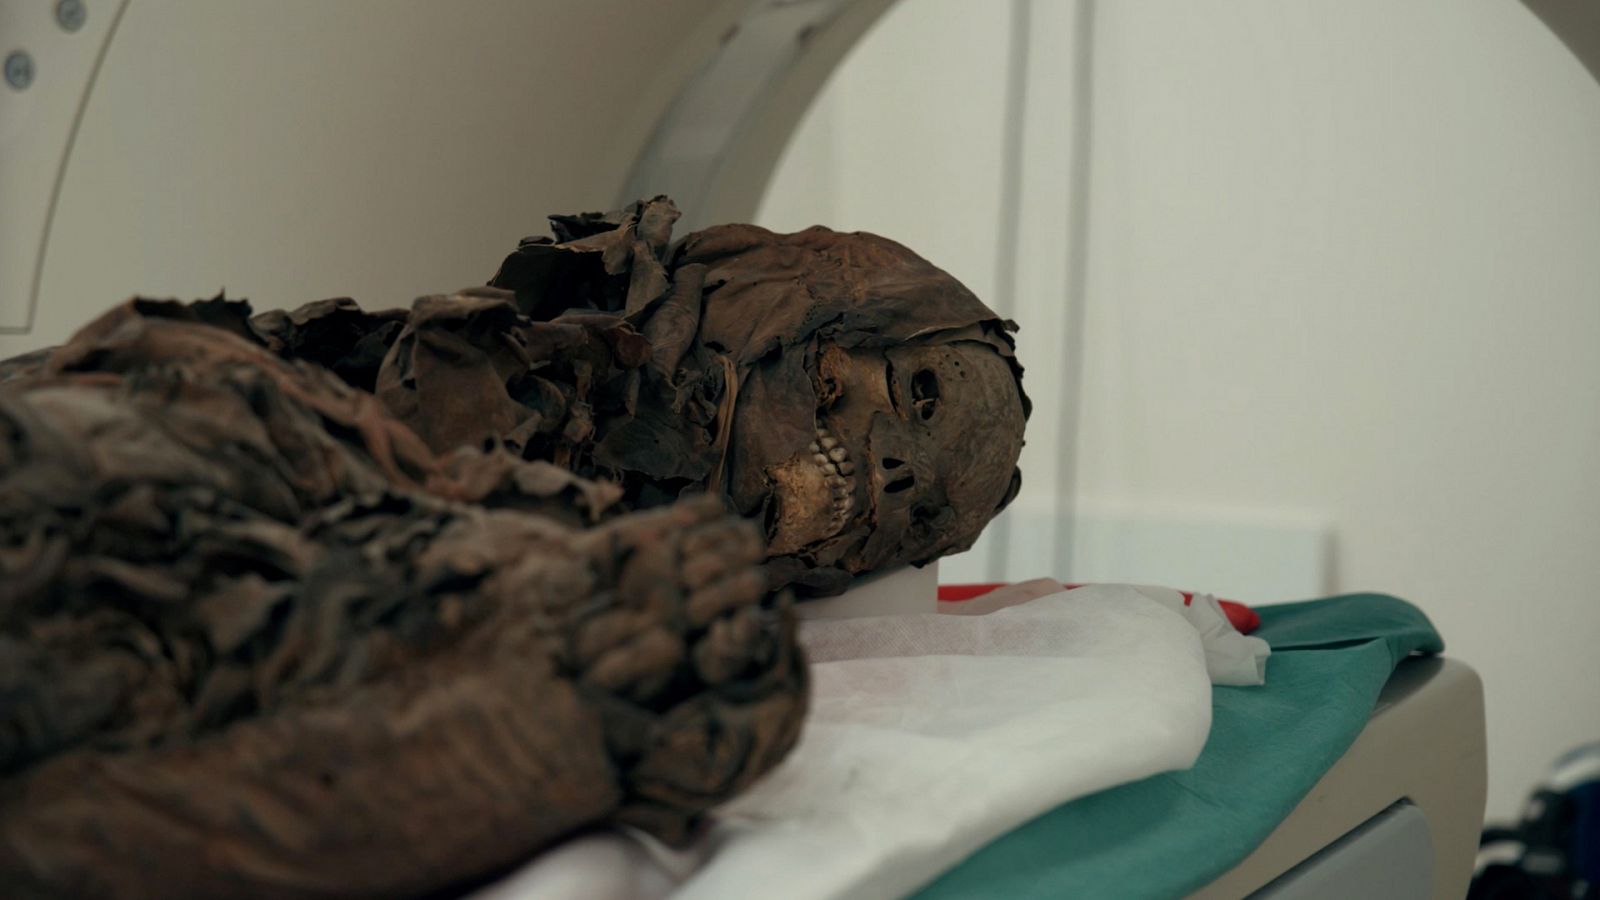 Somos Documentales - Las momias guanches - Documental en RTVE